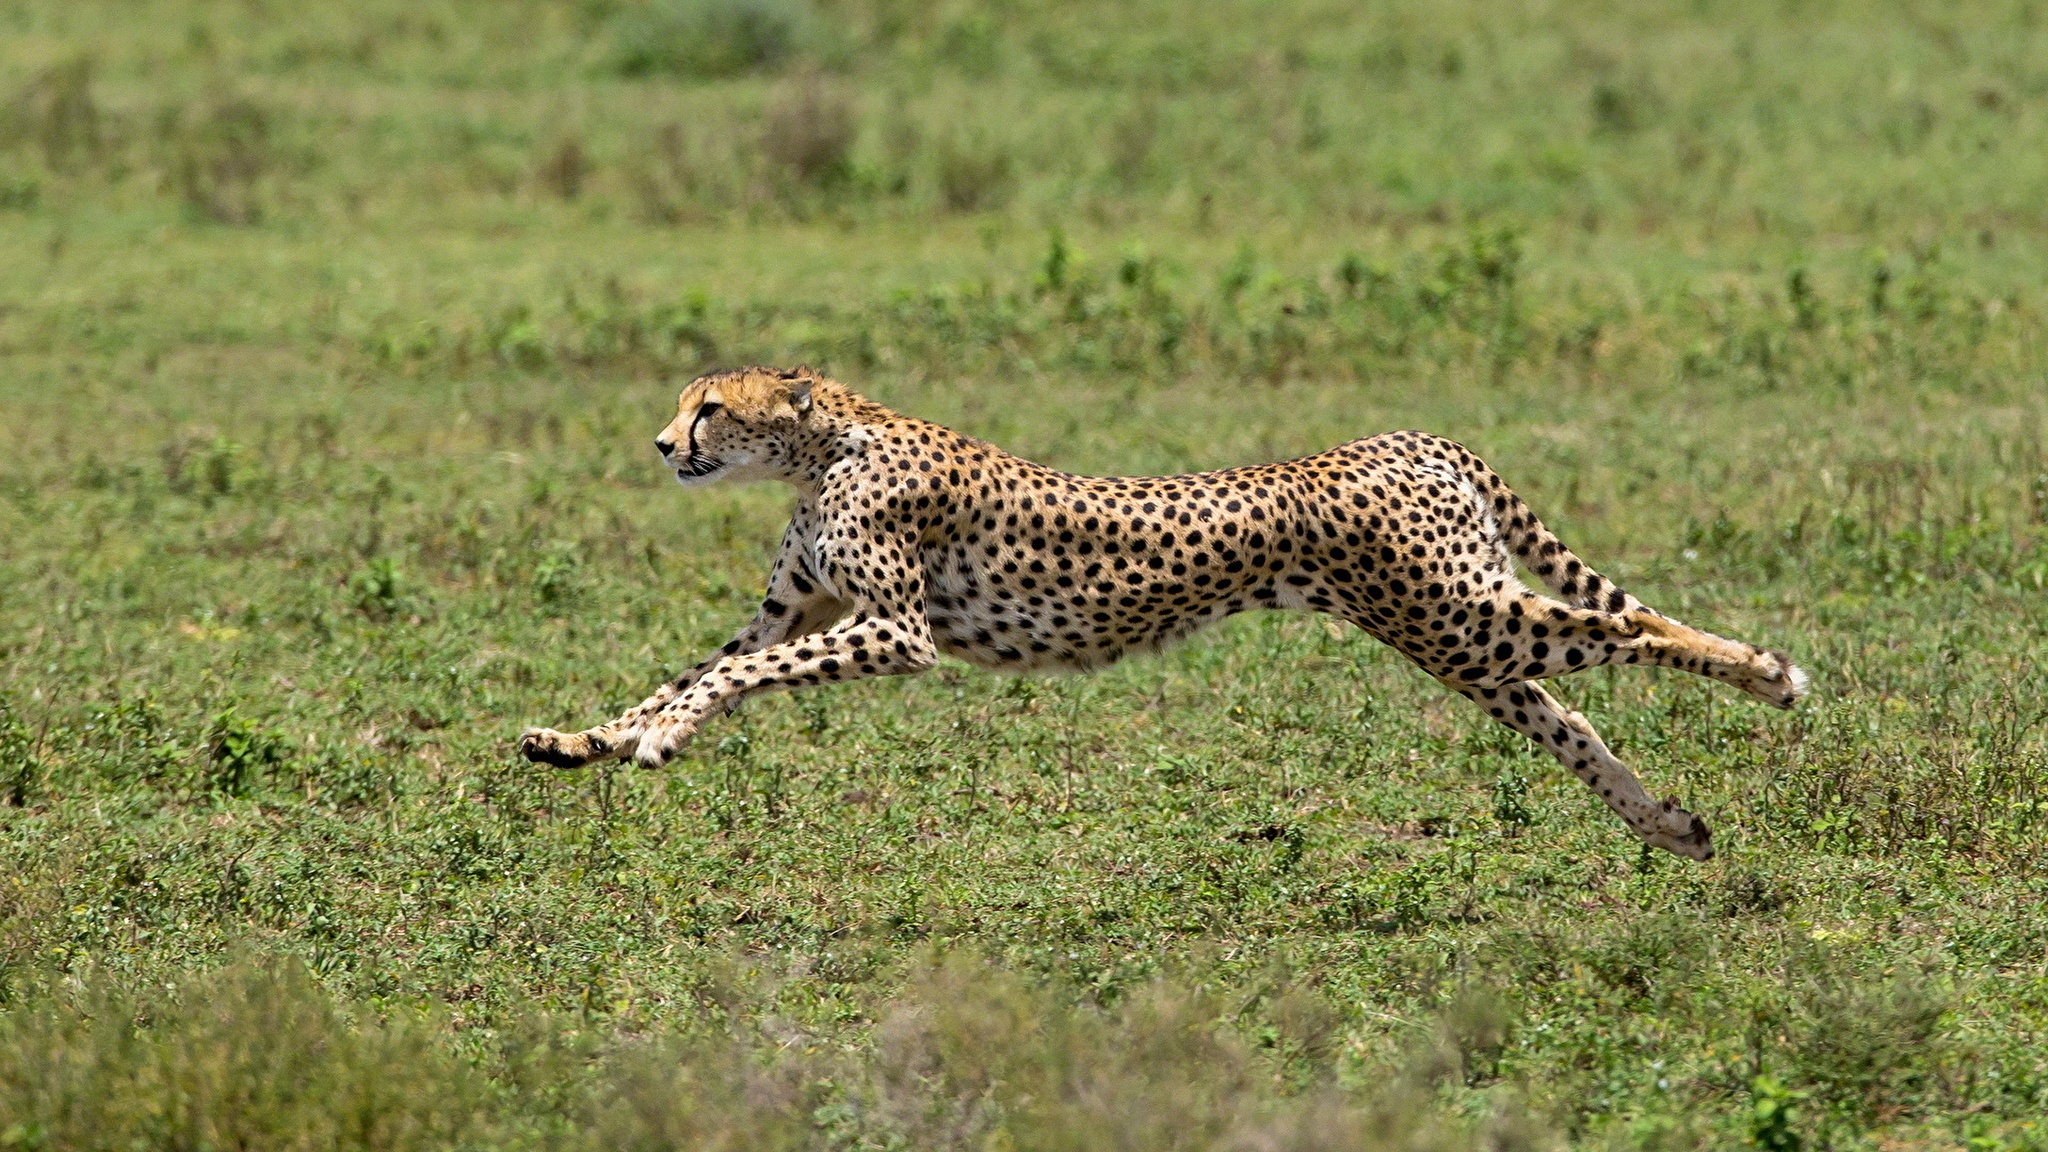 What happens to a cheetah when it runs?